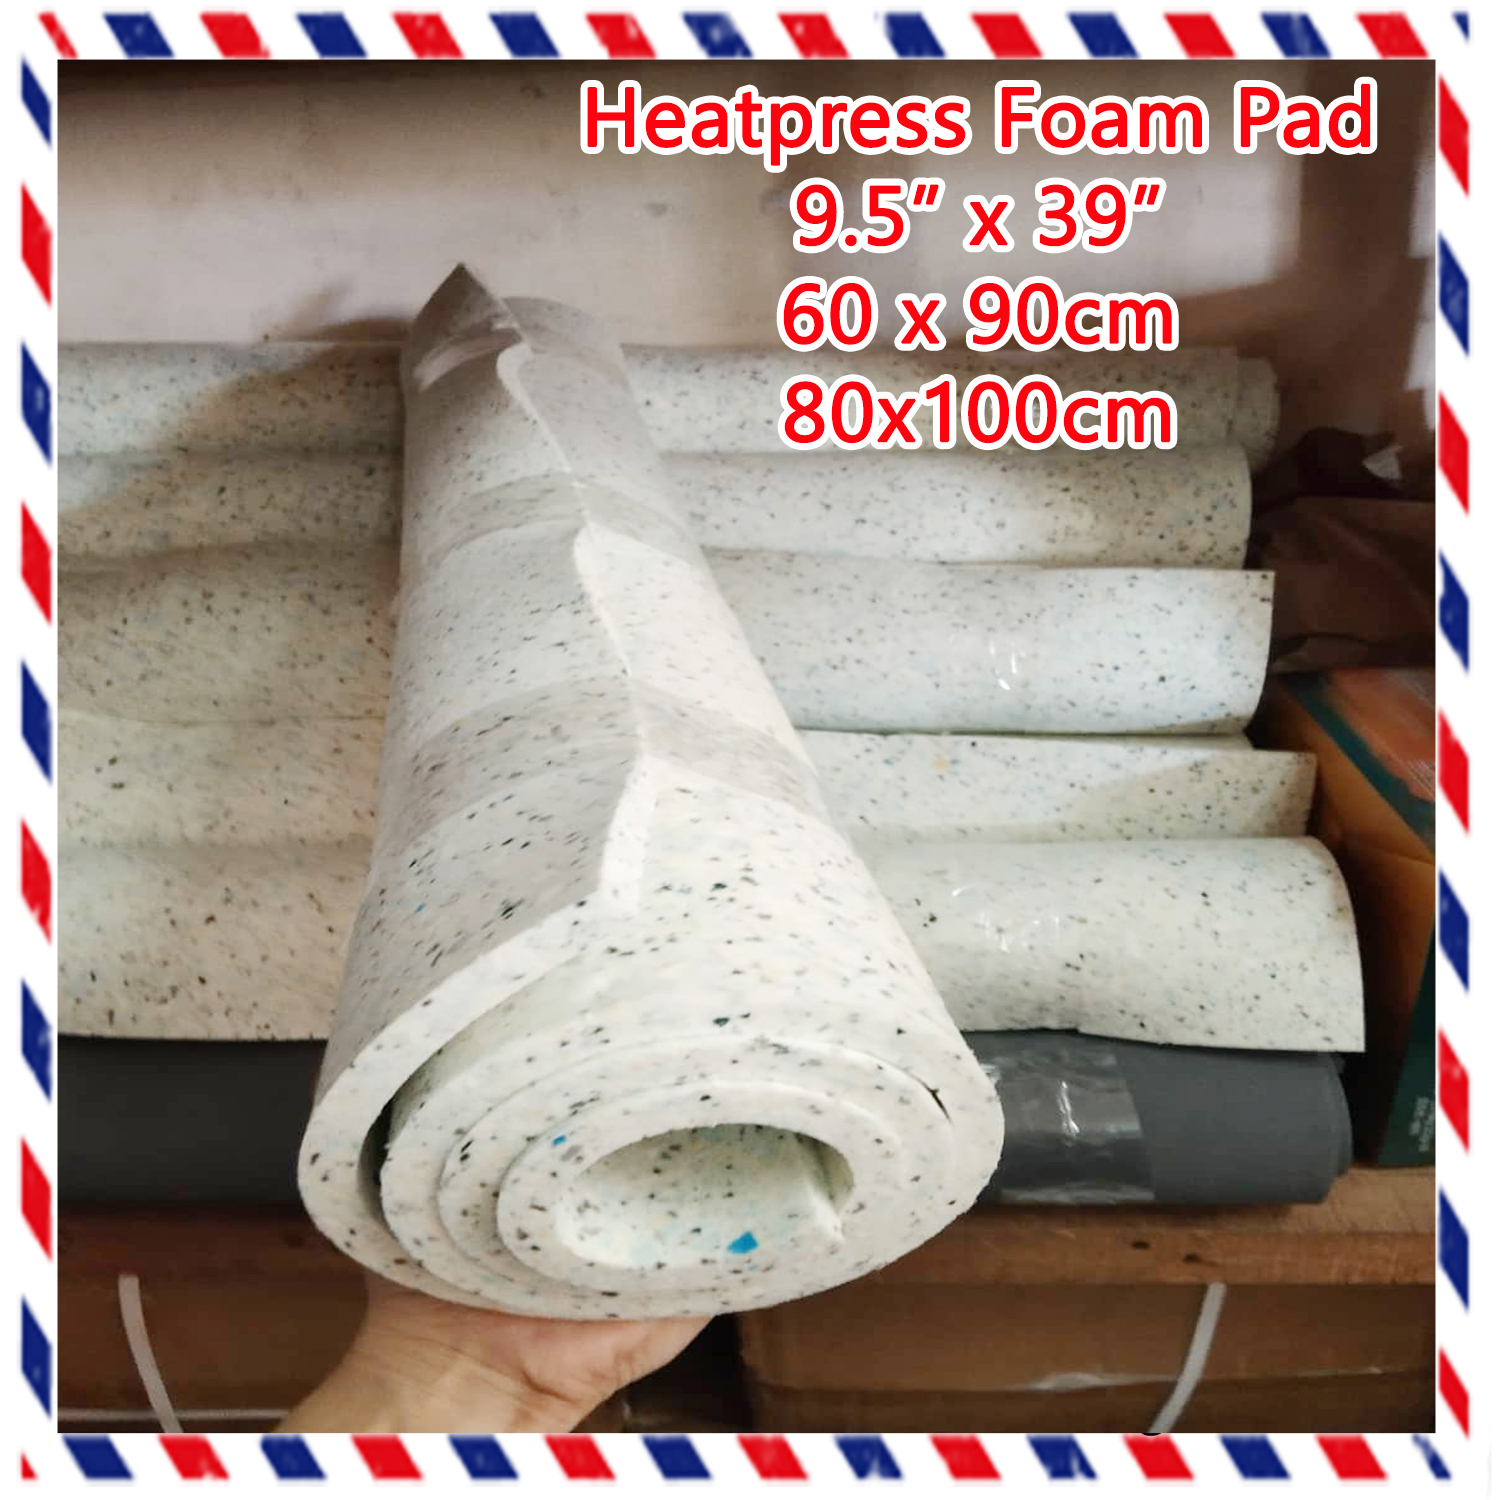 Heatpress foam pad 60x90cm/80x100cm